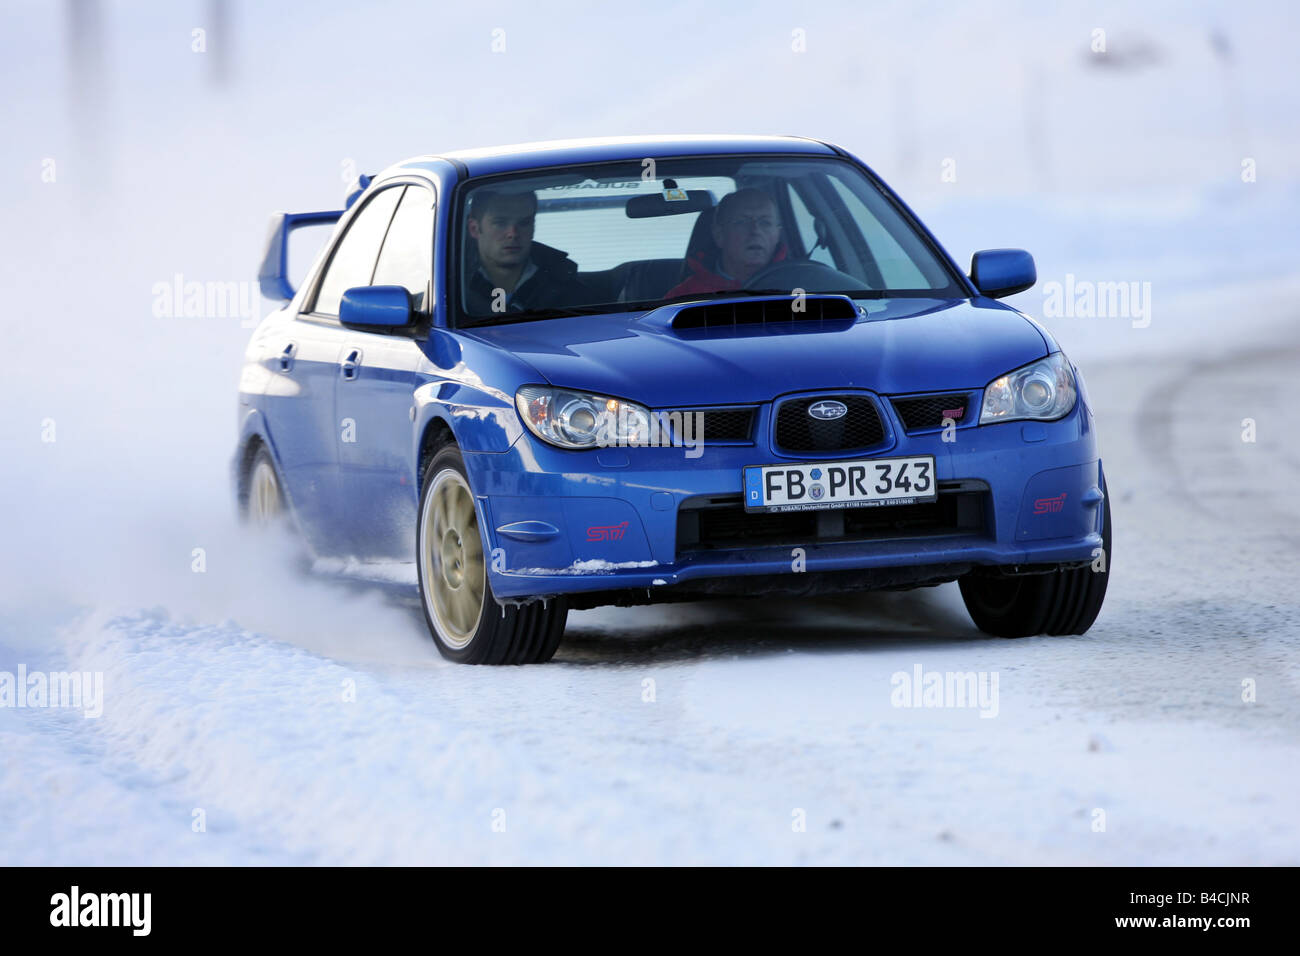 Subaru Impreza 2.5 WRX STi, modello anno 2005-, blu in movimento diagonale dalla parte anteriore, vista frontale, neve inverno Foto Stock